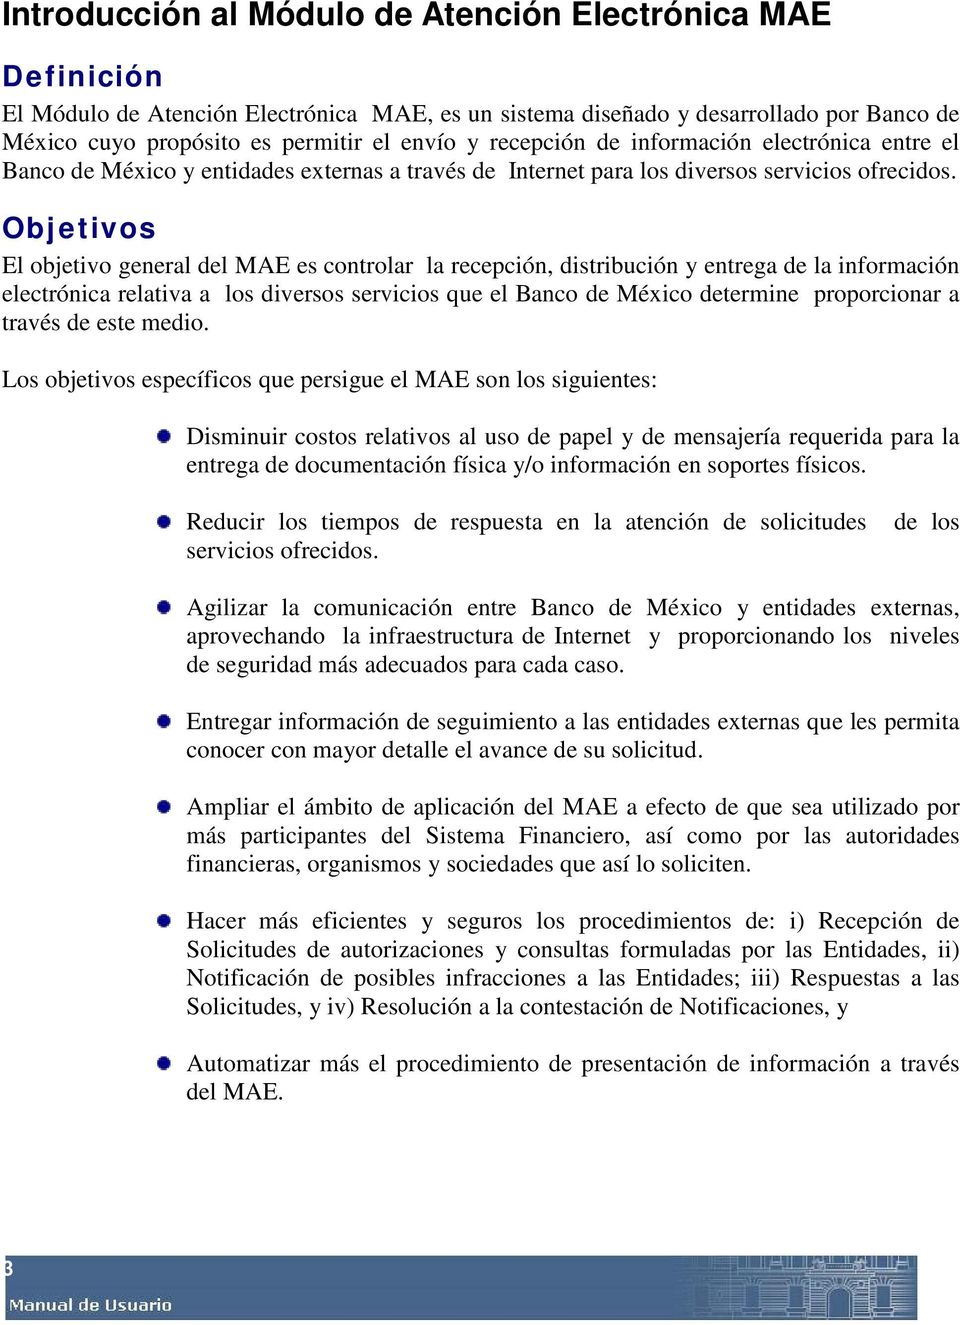 Objetivos El objetivo general del MAE es controlar la recepción, distribución y entrega de la información electrónica relativa a los diversos servicios que el Banco de México determine proporcionar a